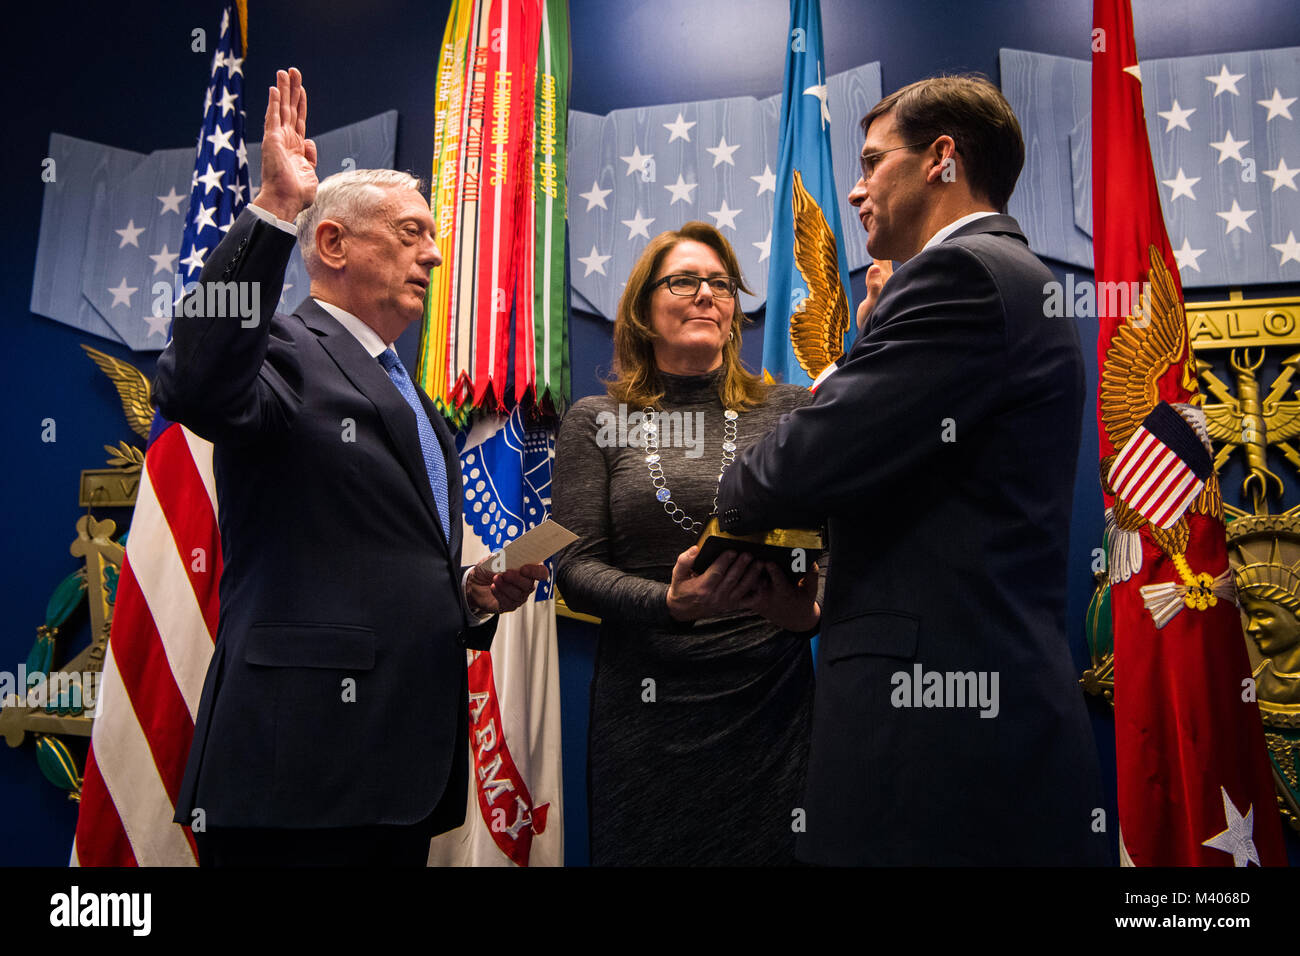 El secretario de Defensa James N. Mattis acogió oficialmente Ejército atrás secretario Dr. Mark T. Esper en el servicio que lo crió durante un juramento en una ceremonia celebrada en el Pentágono el viernes, 5 de enero de 2018. Foto de stock